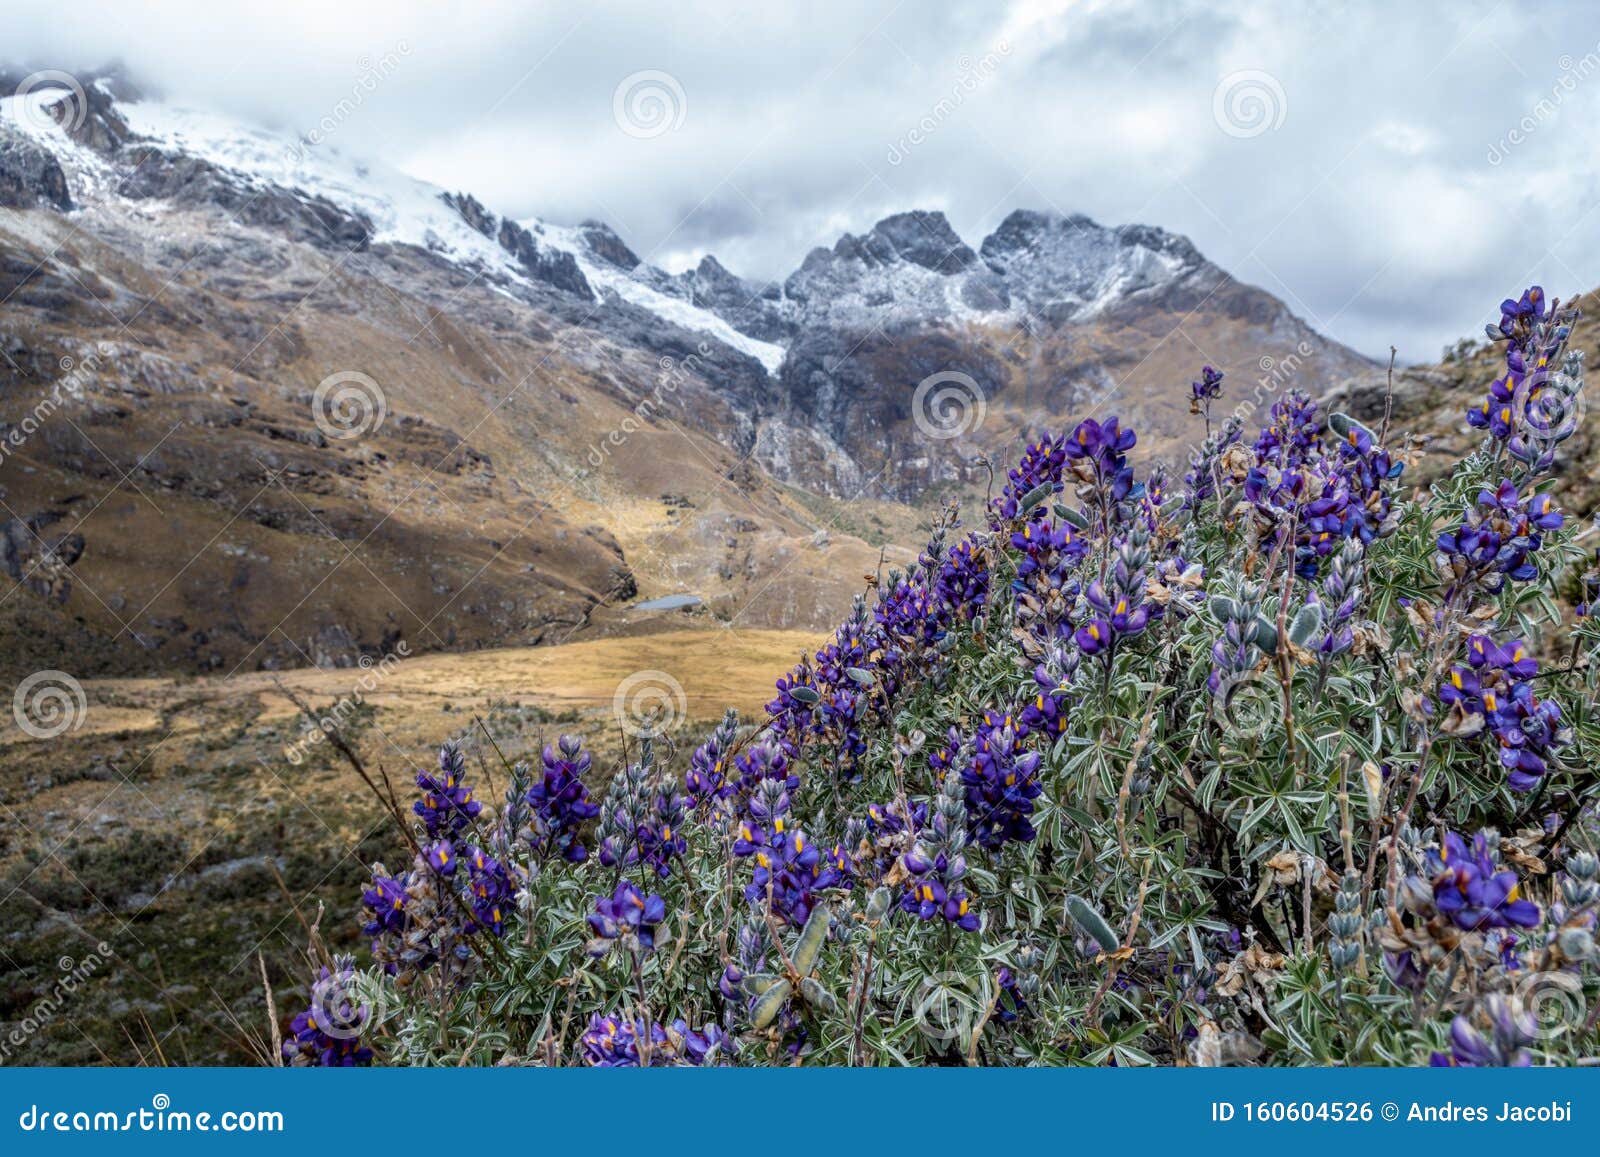 Hermosa Planta Con Flores Violetas Se Encuentra En Las Alturas De La  Cordillera De Los Andes Foto de archivo - Imagen de morada, nublado:  160604526